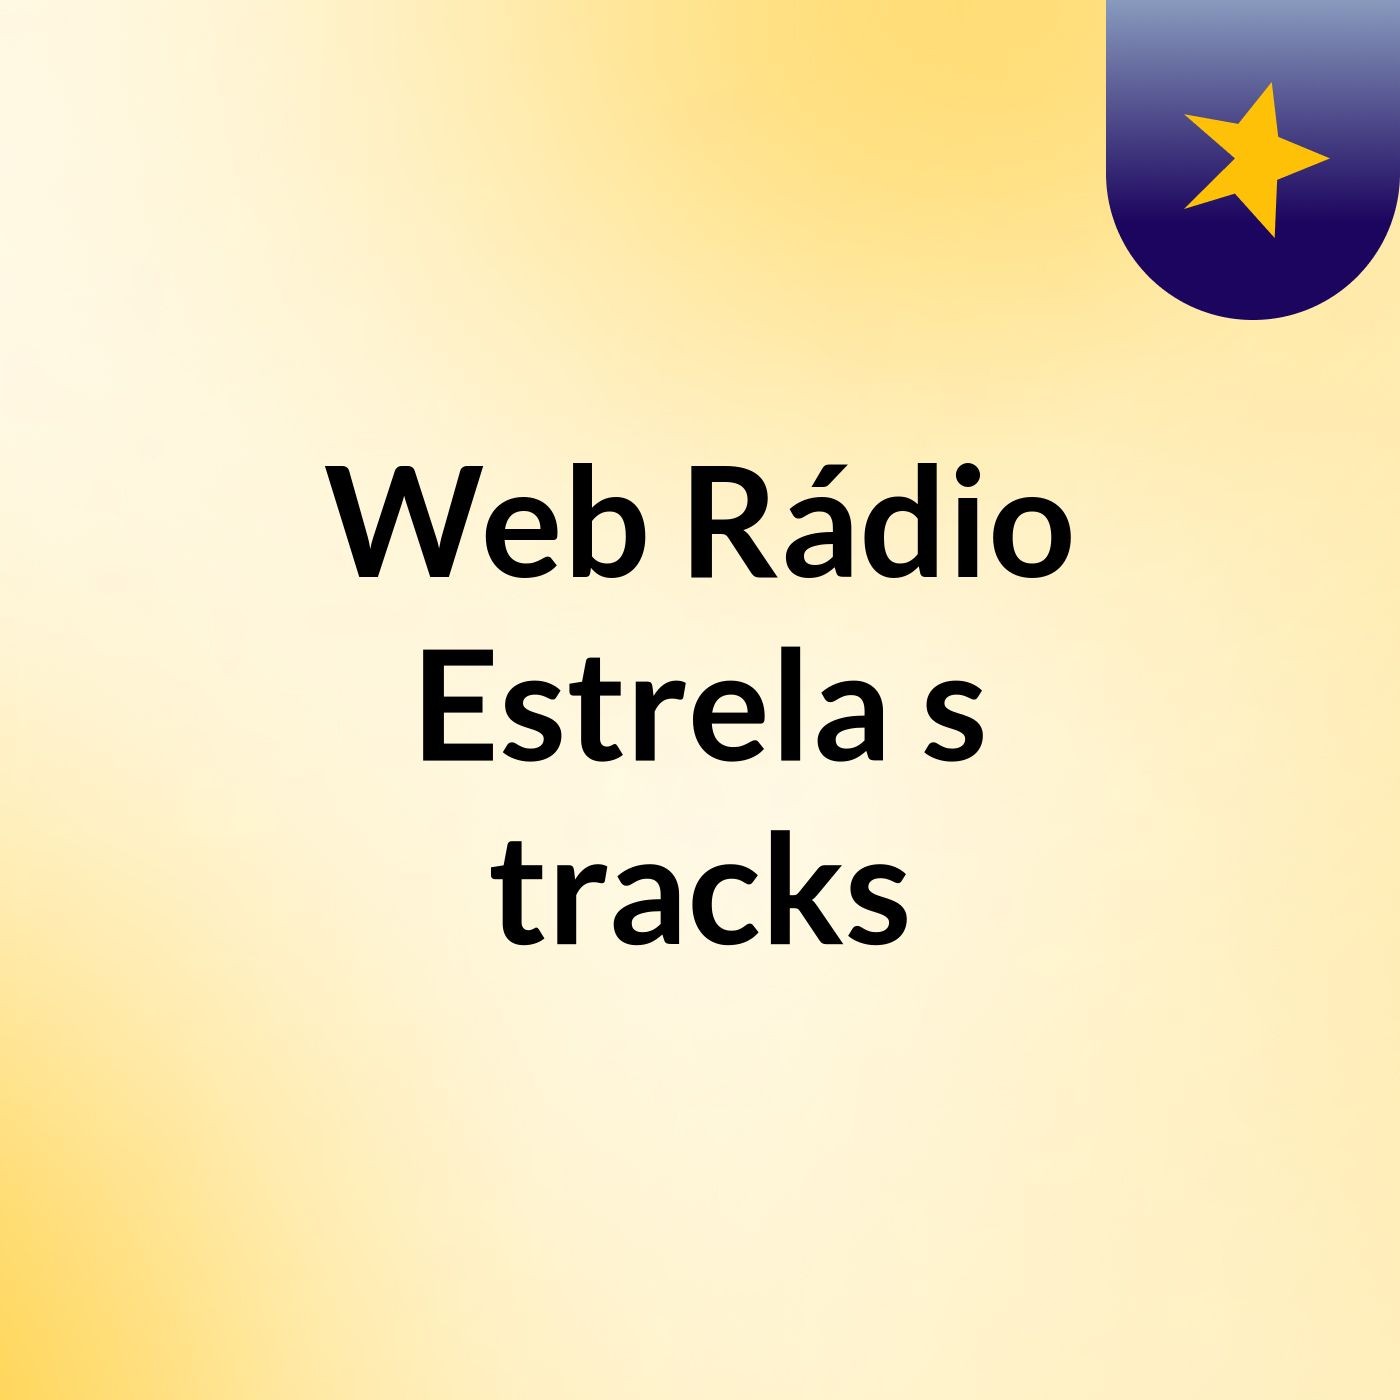 Web Rádio Estrela's tracks